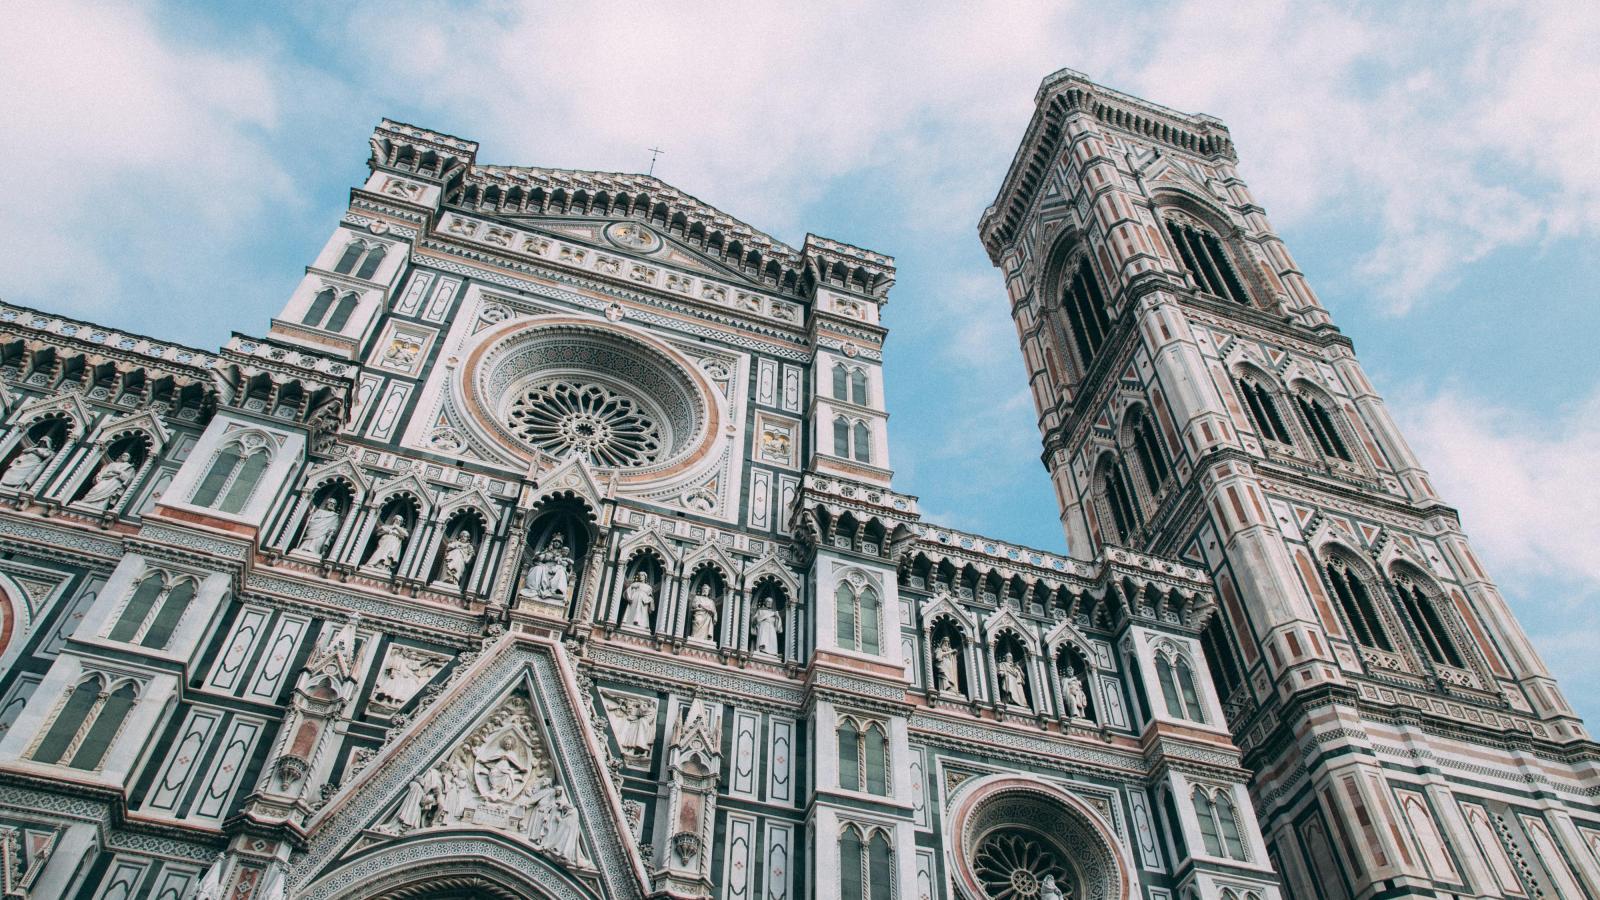 Die Kathedrale von Florenz von unten Fotografiert vor einem leicht bewölkten blauen Himmel.